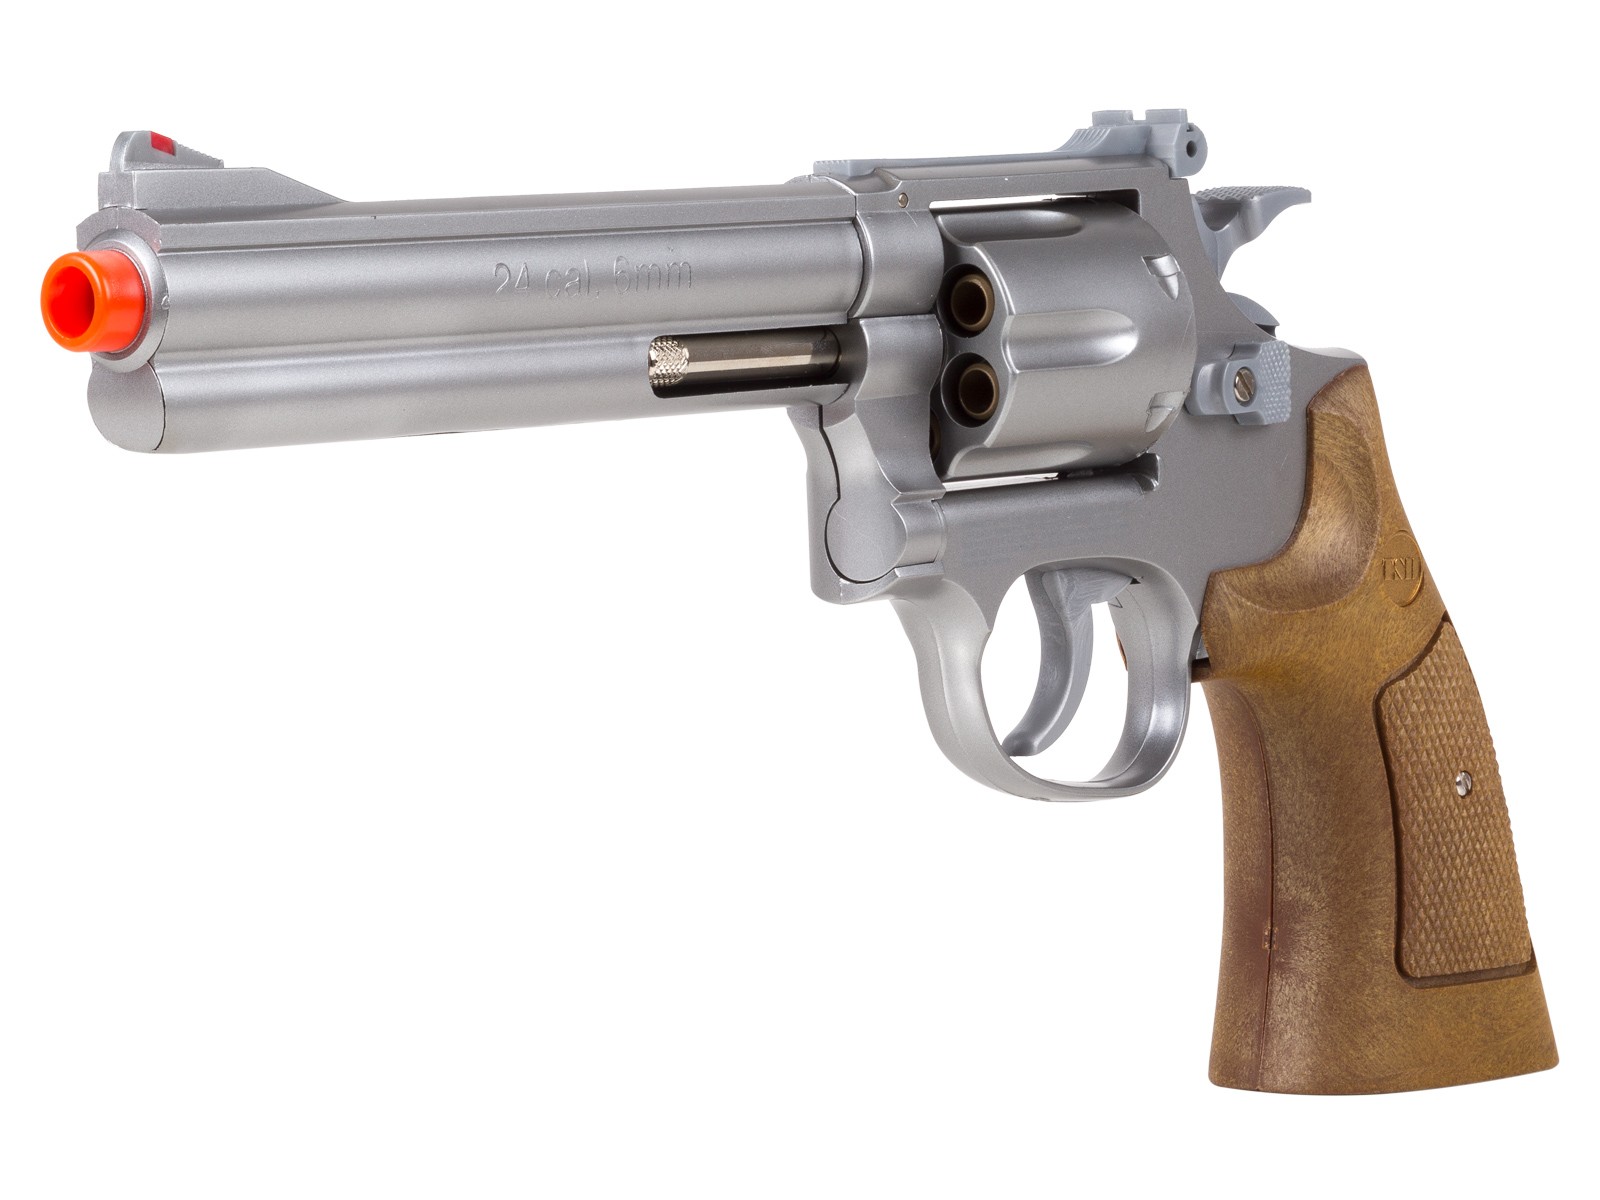 TSD 934 UHC 6 inch revolver, Silver/Brown